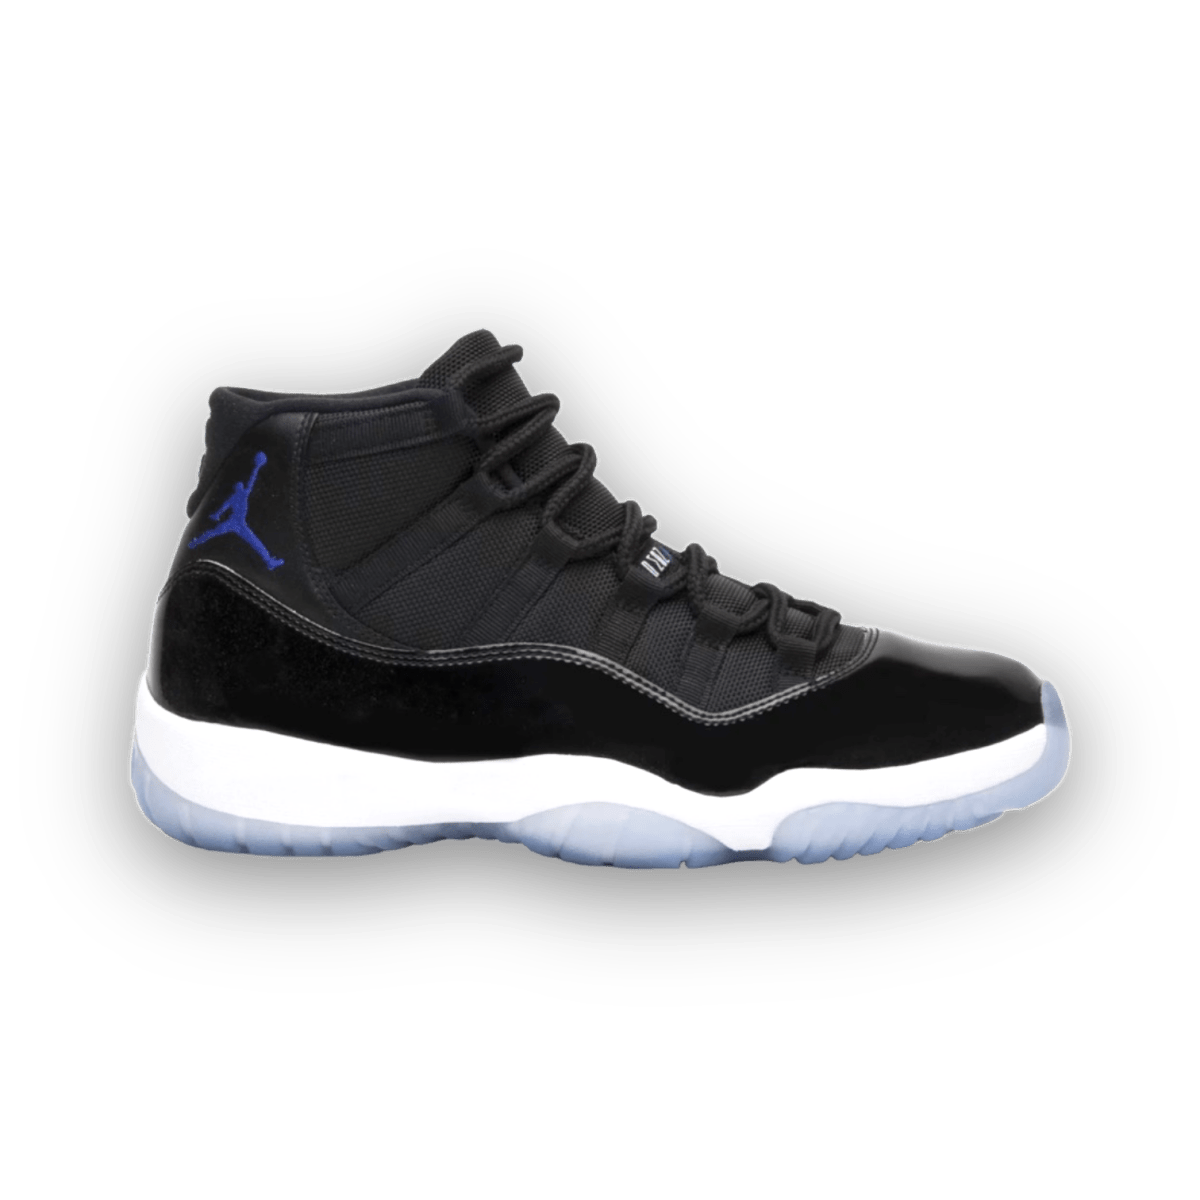 Air Jordan 11 Retro 'Space Jam' 2016 - Gently Enjoyed (Used) - Men 10.5 - High Sneaker - Jawns on Fire Sneakers & Streetwear